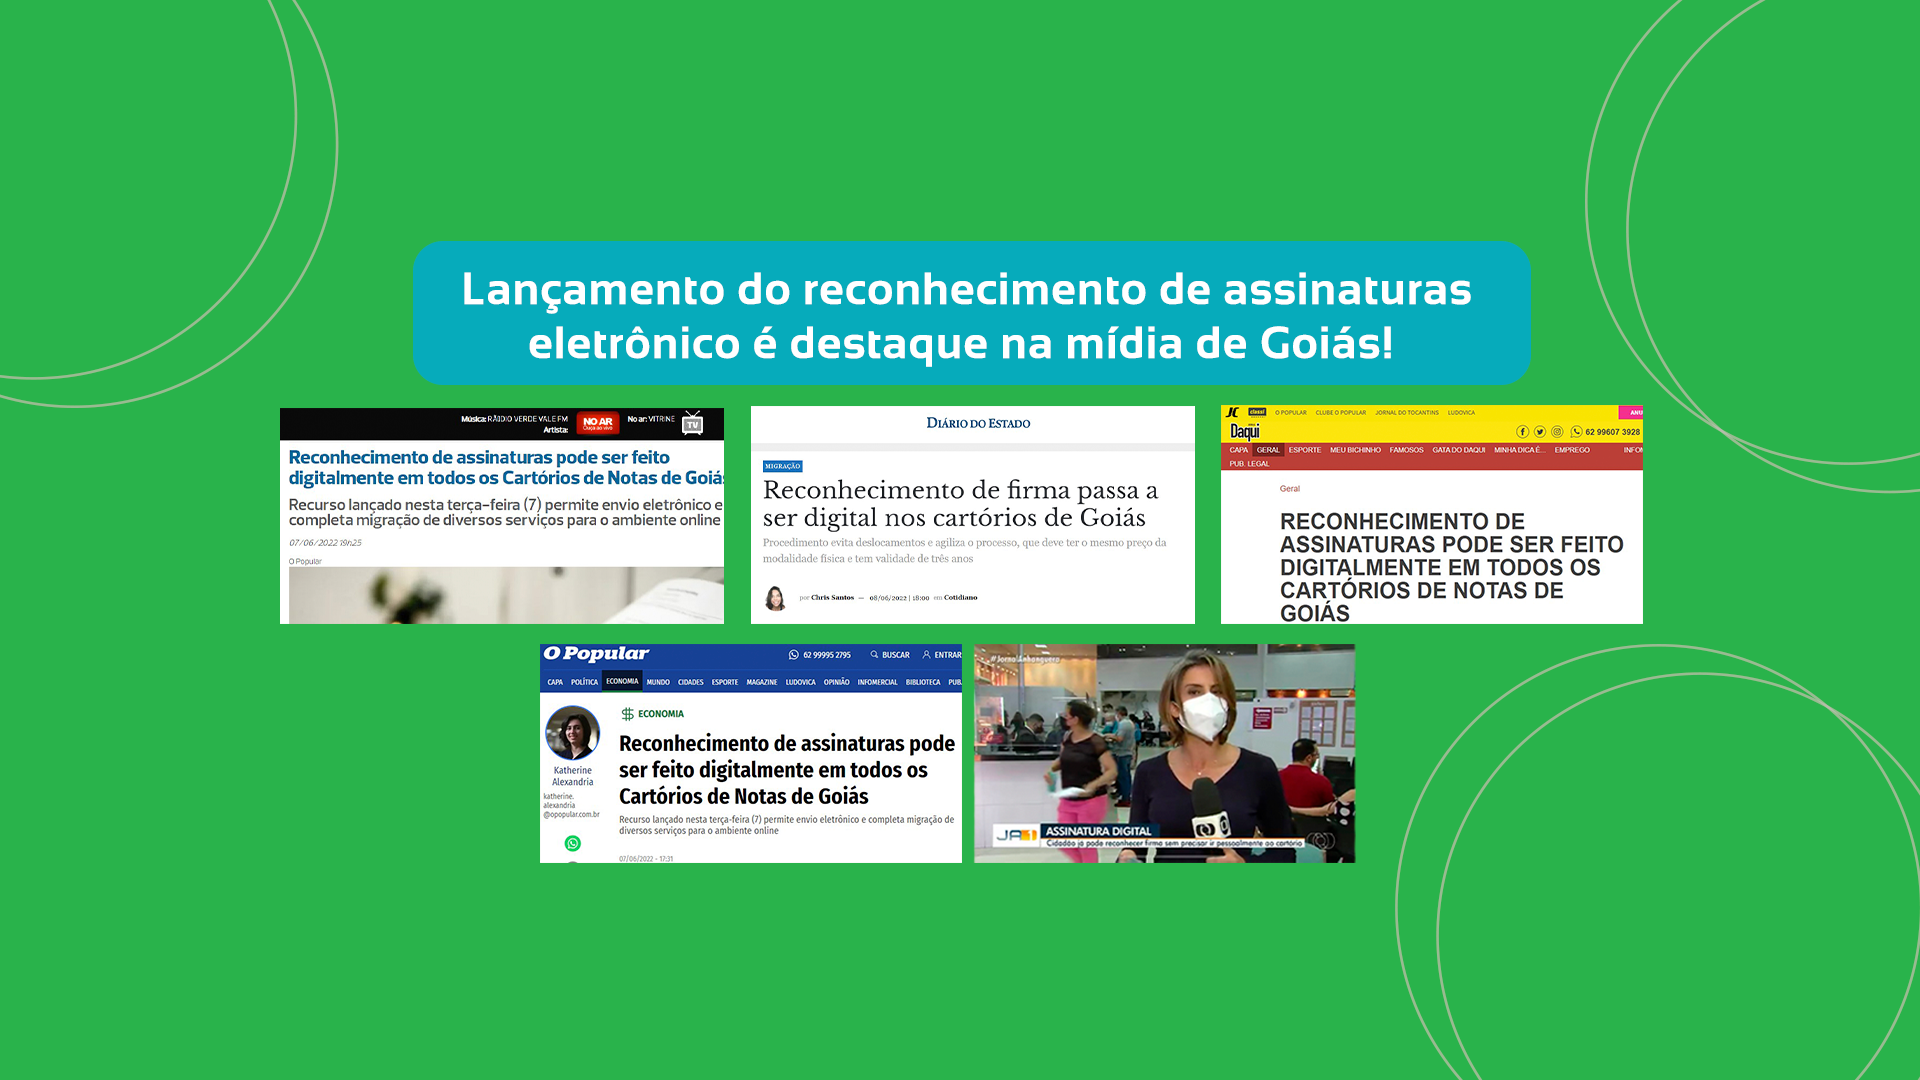 Clipping – O Popular – Reconhecimento De Assinaturas Pode Ser Feito Digitalmente Em Todos Os Cartórios De Notas De Goiás